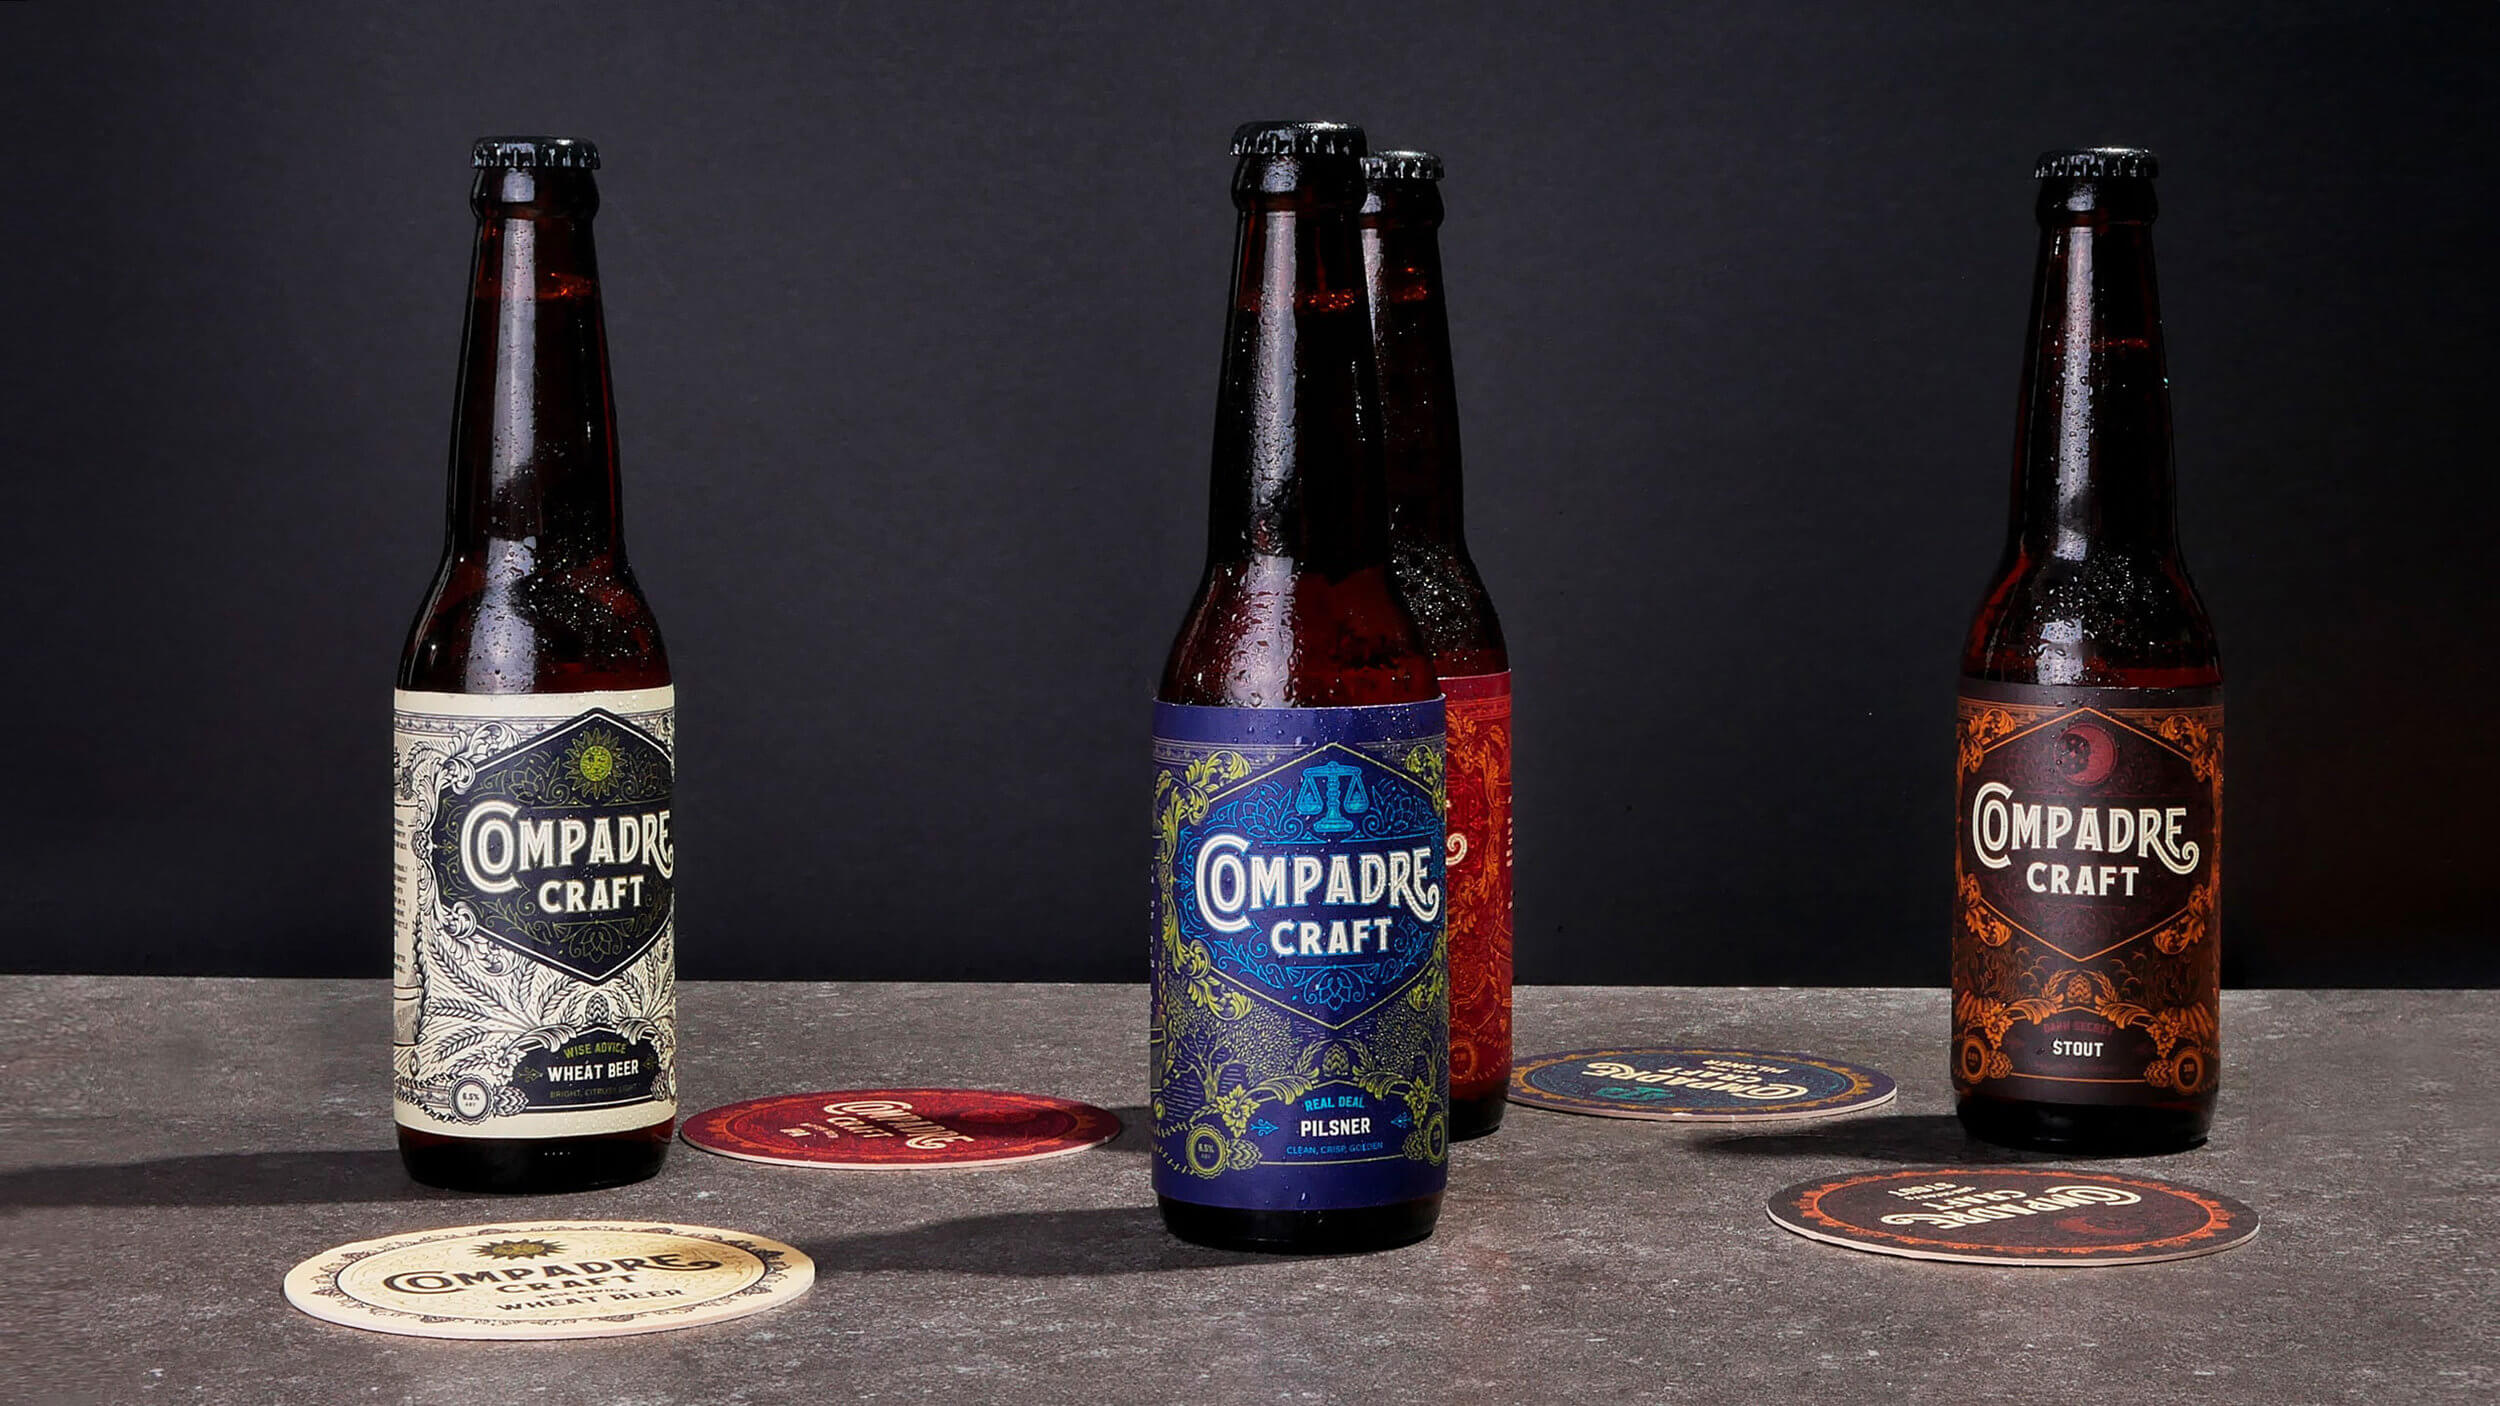 Vintage bottle label designs for food and beverage brand Compadre Craft Beer